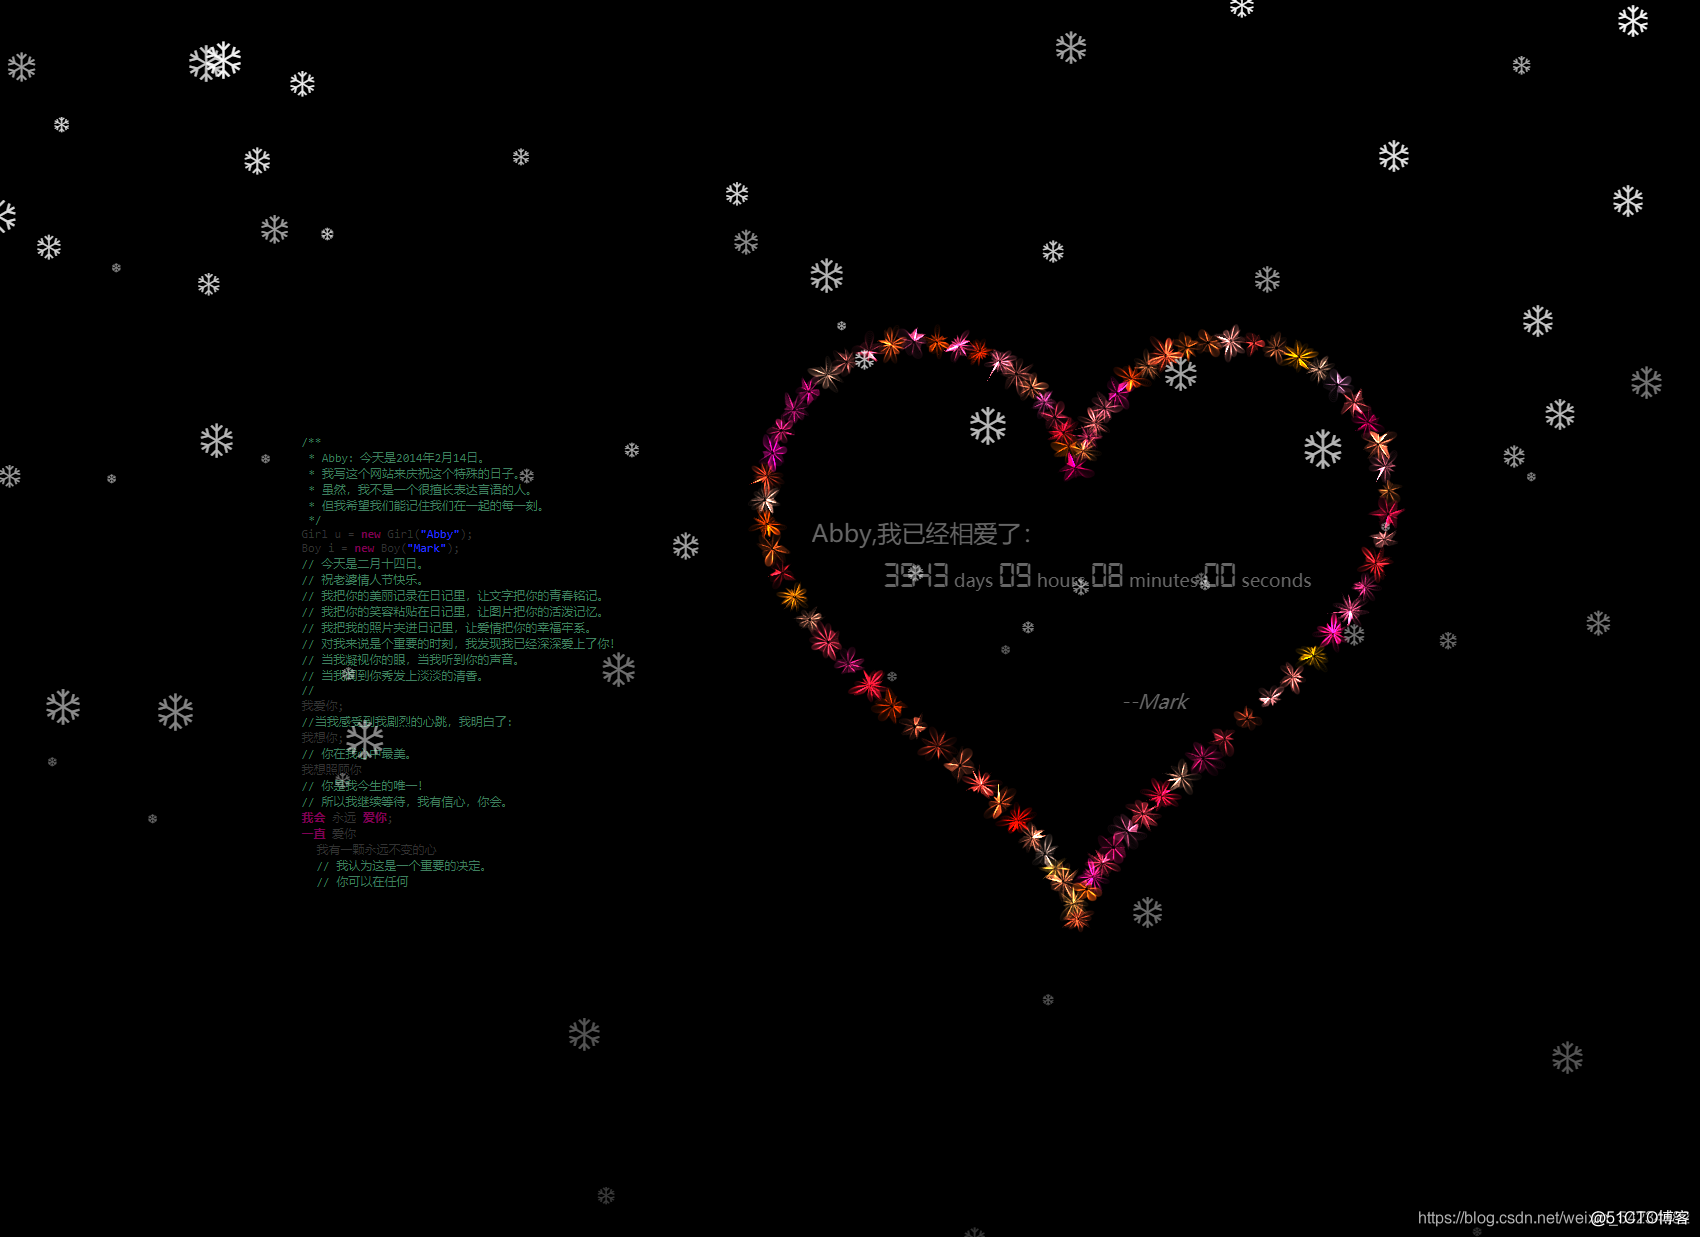 ❤女朋友生日❤ HTML+css3+js 实现抖音炫酷樱花3D相册 (含背景音乐)程序员表白必备_css_28